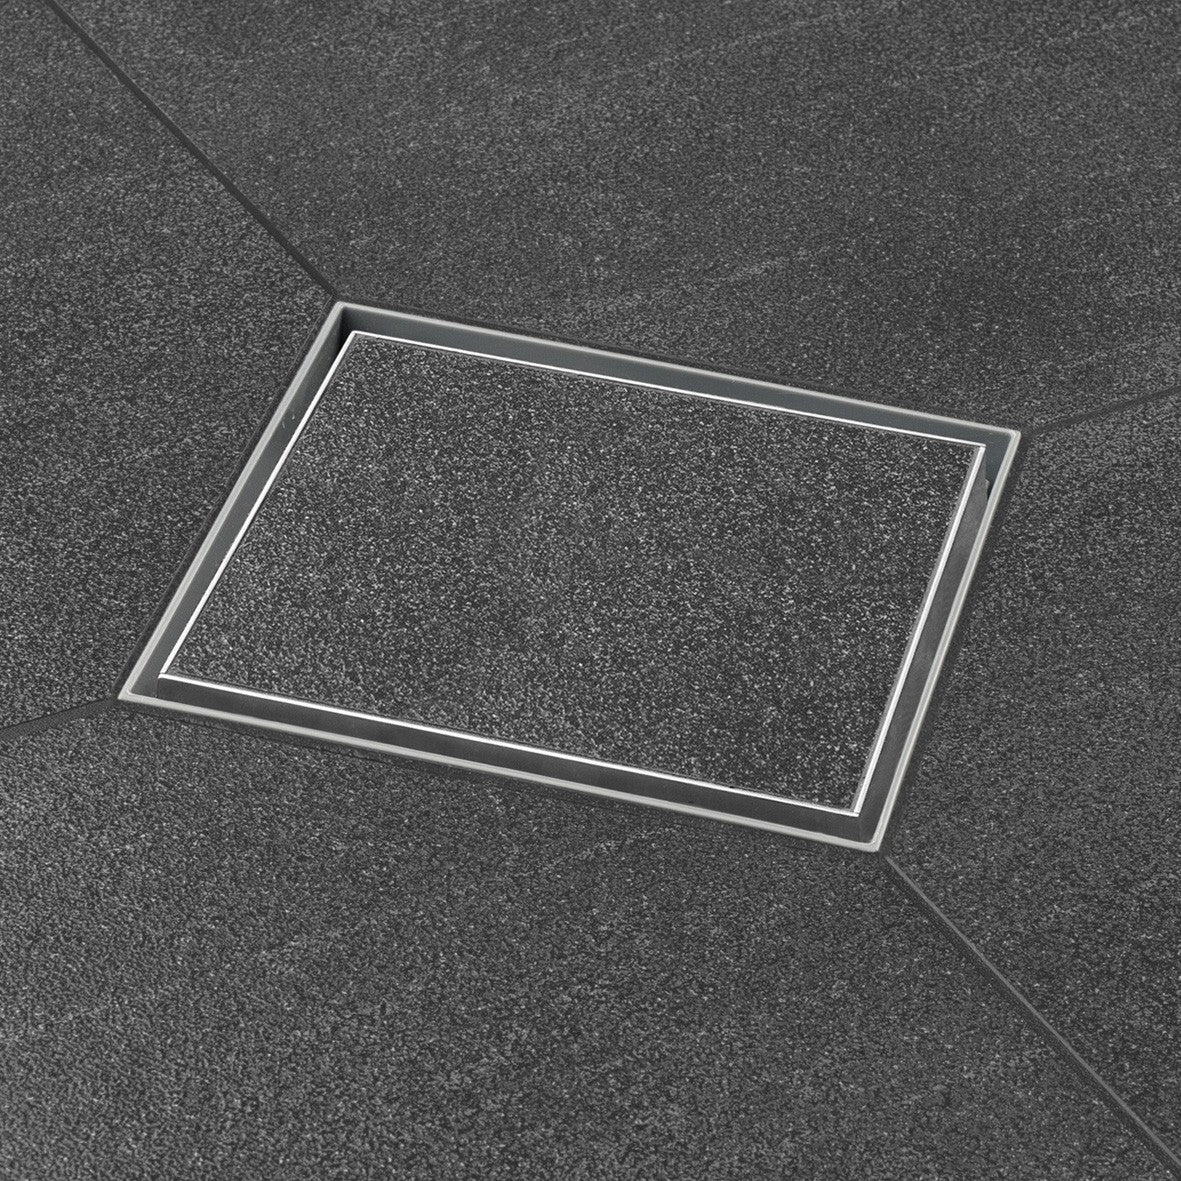 Scarico per doccia a filo pavimento con griglia piastrellabile 15x15 cm 